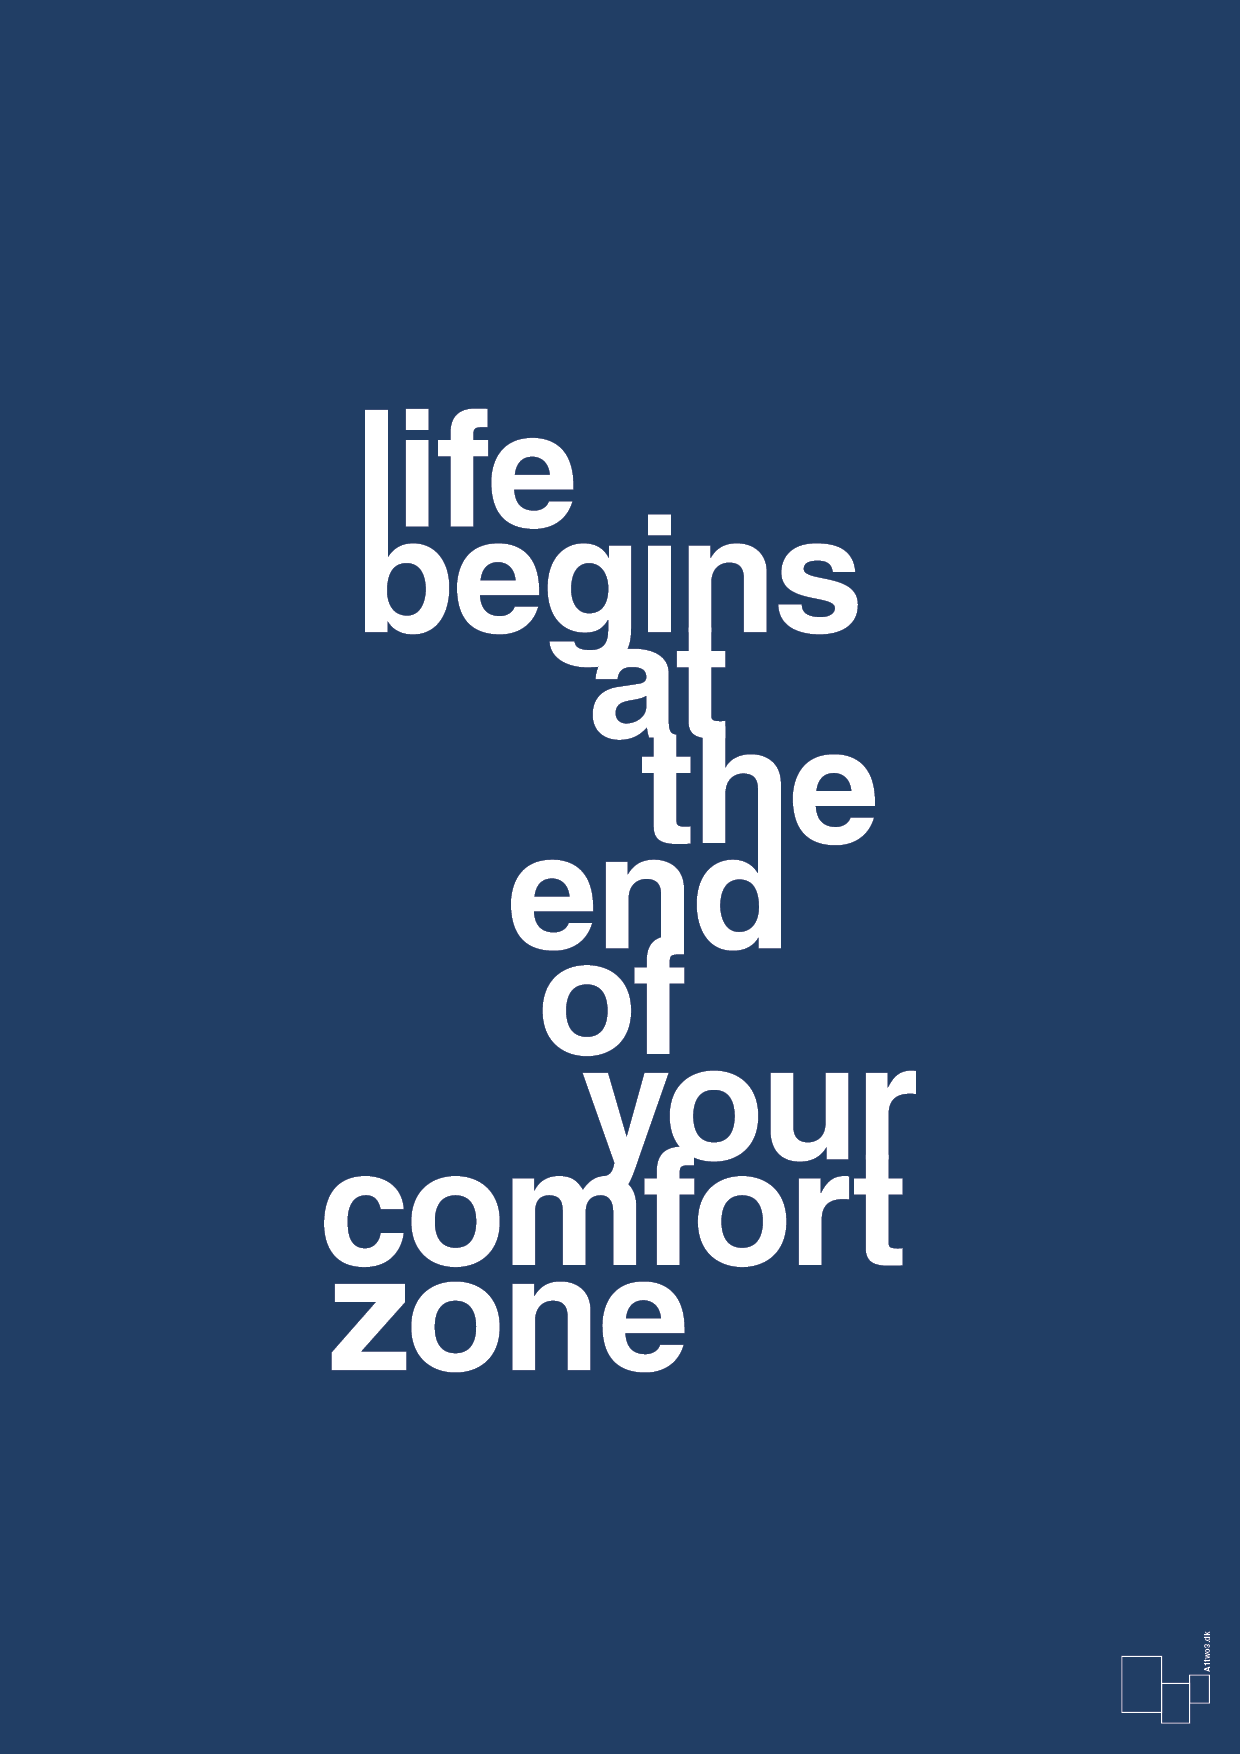 life begins at the end of your comfort zone - Plakat med Ordsprog i Lapis Blue